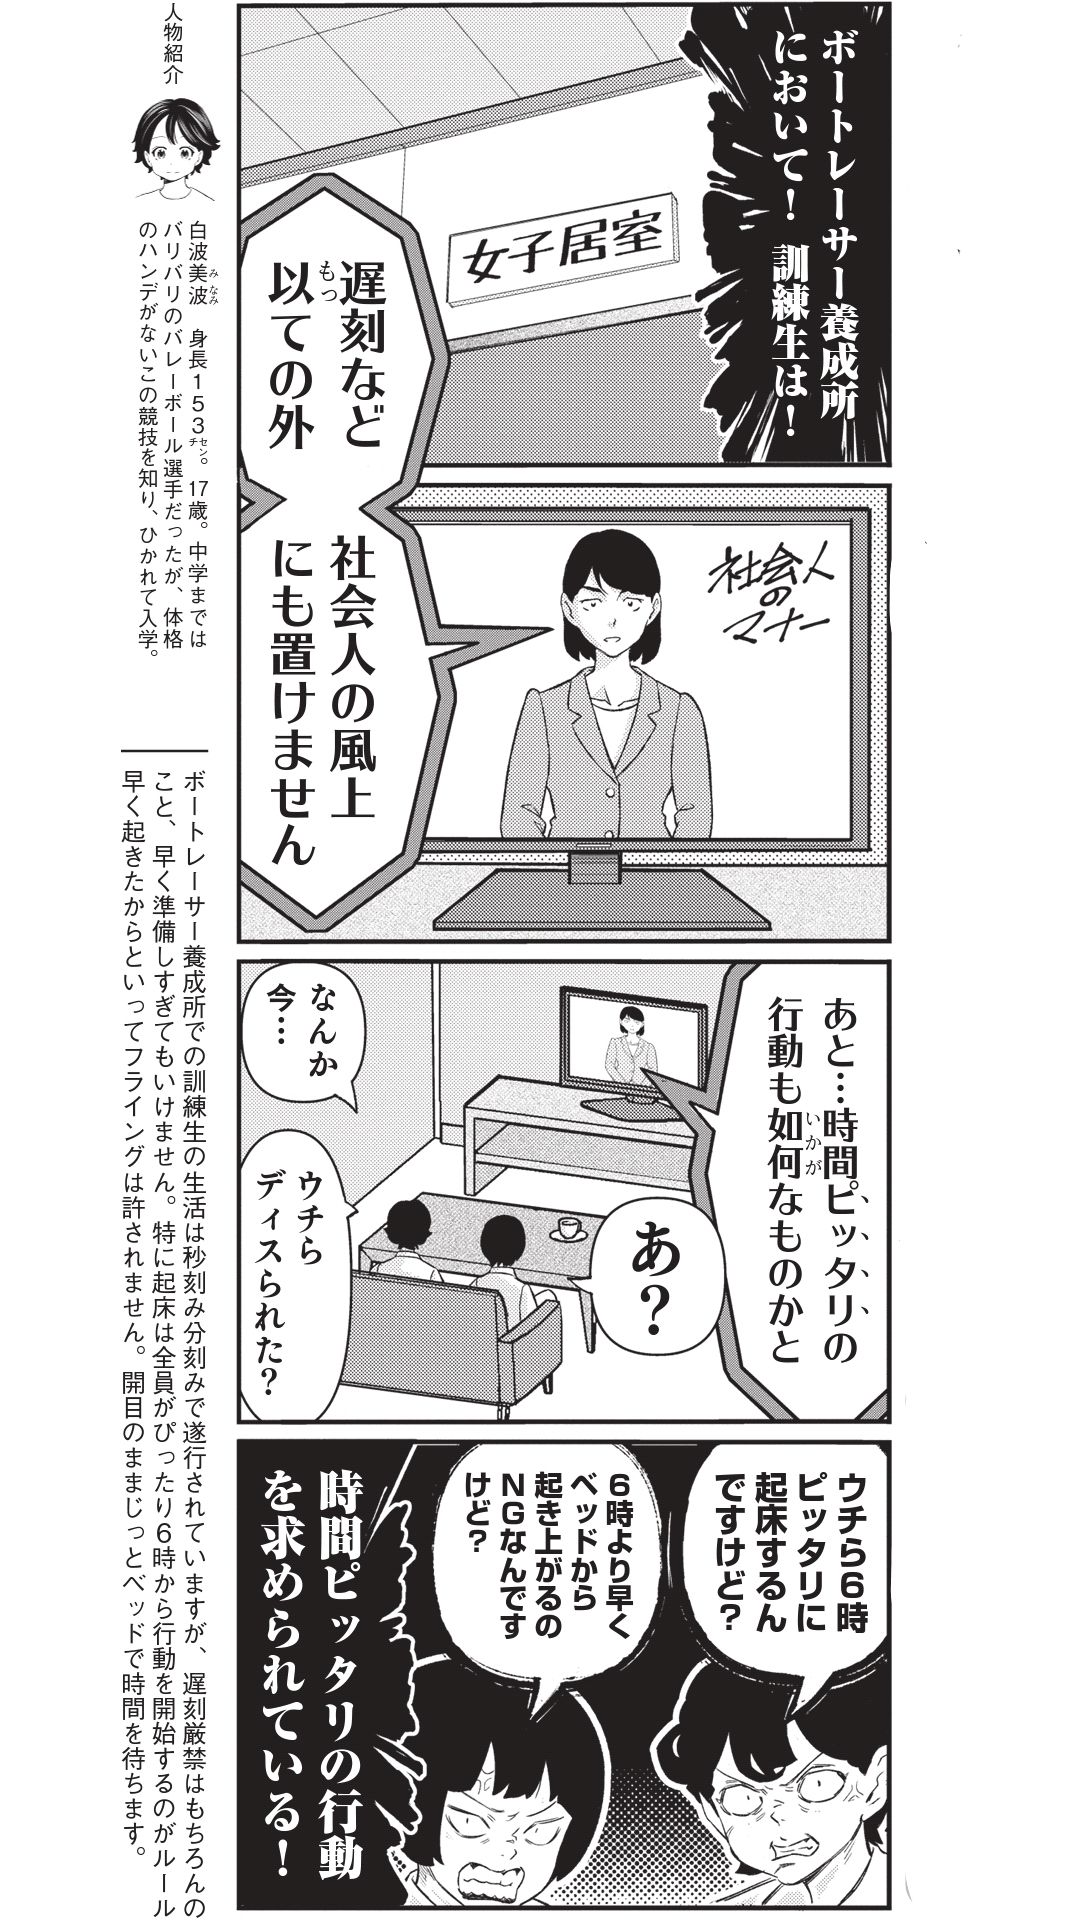 4コマ漫画『ボートレース訓練生・美波』こぼれ話「遅刻は厳禁で…」の画像